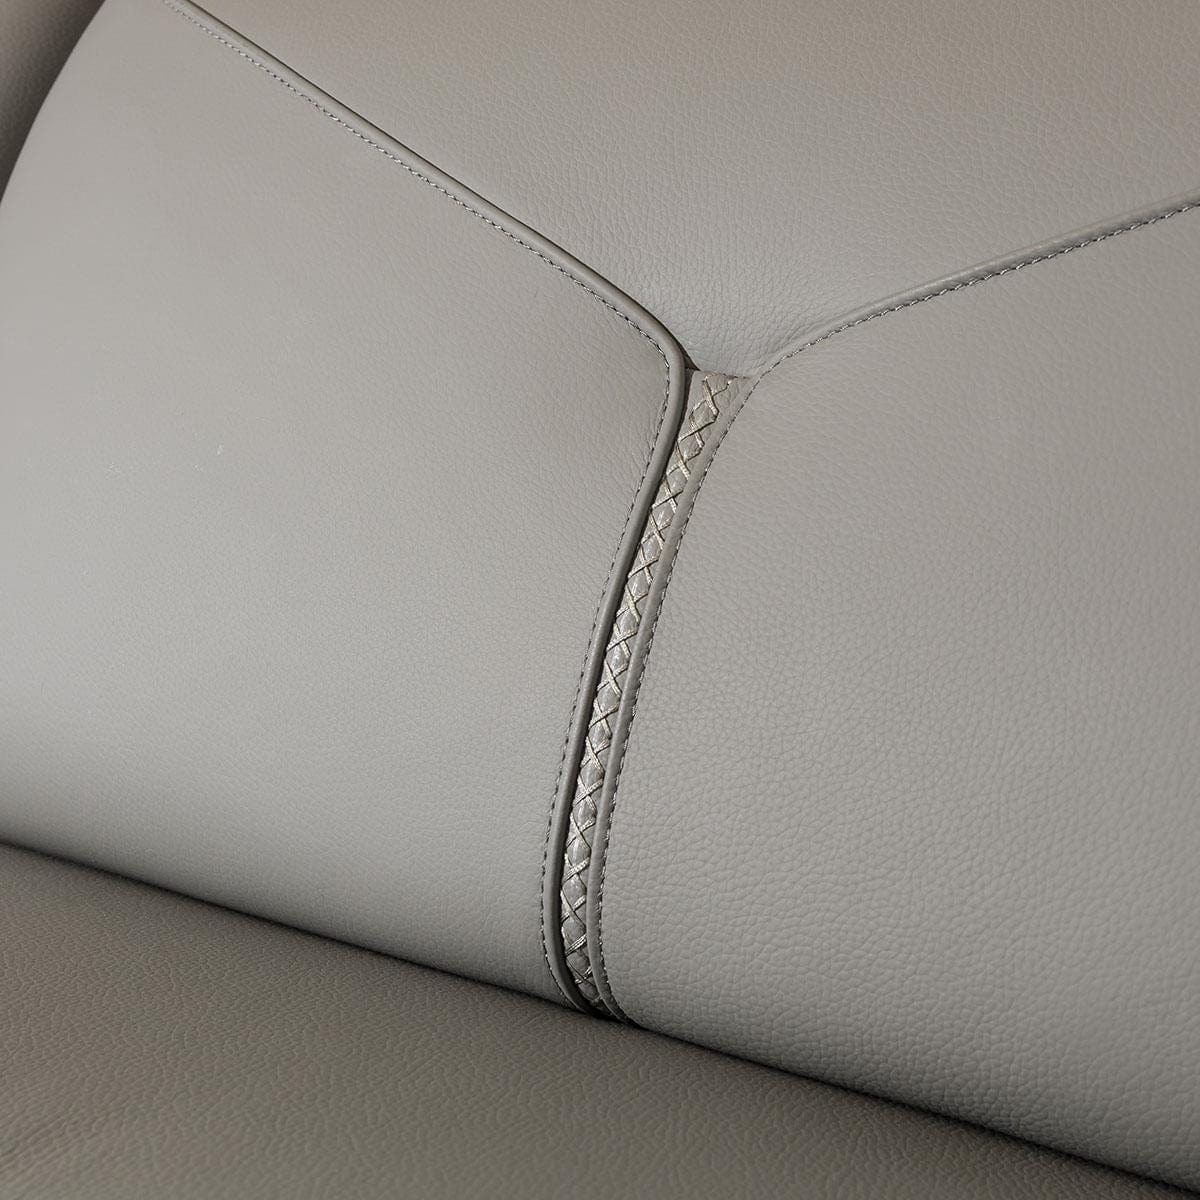 Quatropi Reggie Recliner 3 Seater Leather Sofa Grey